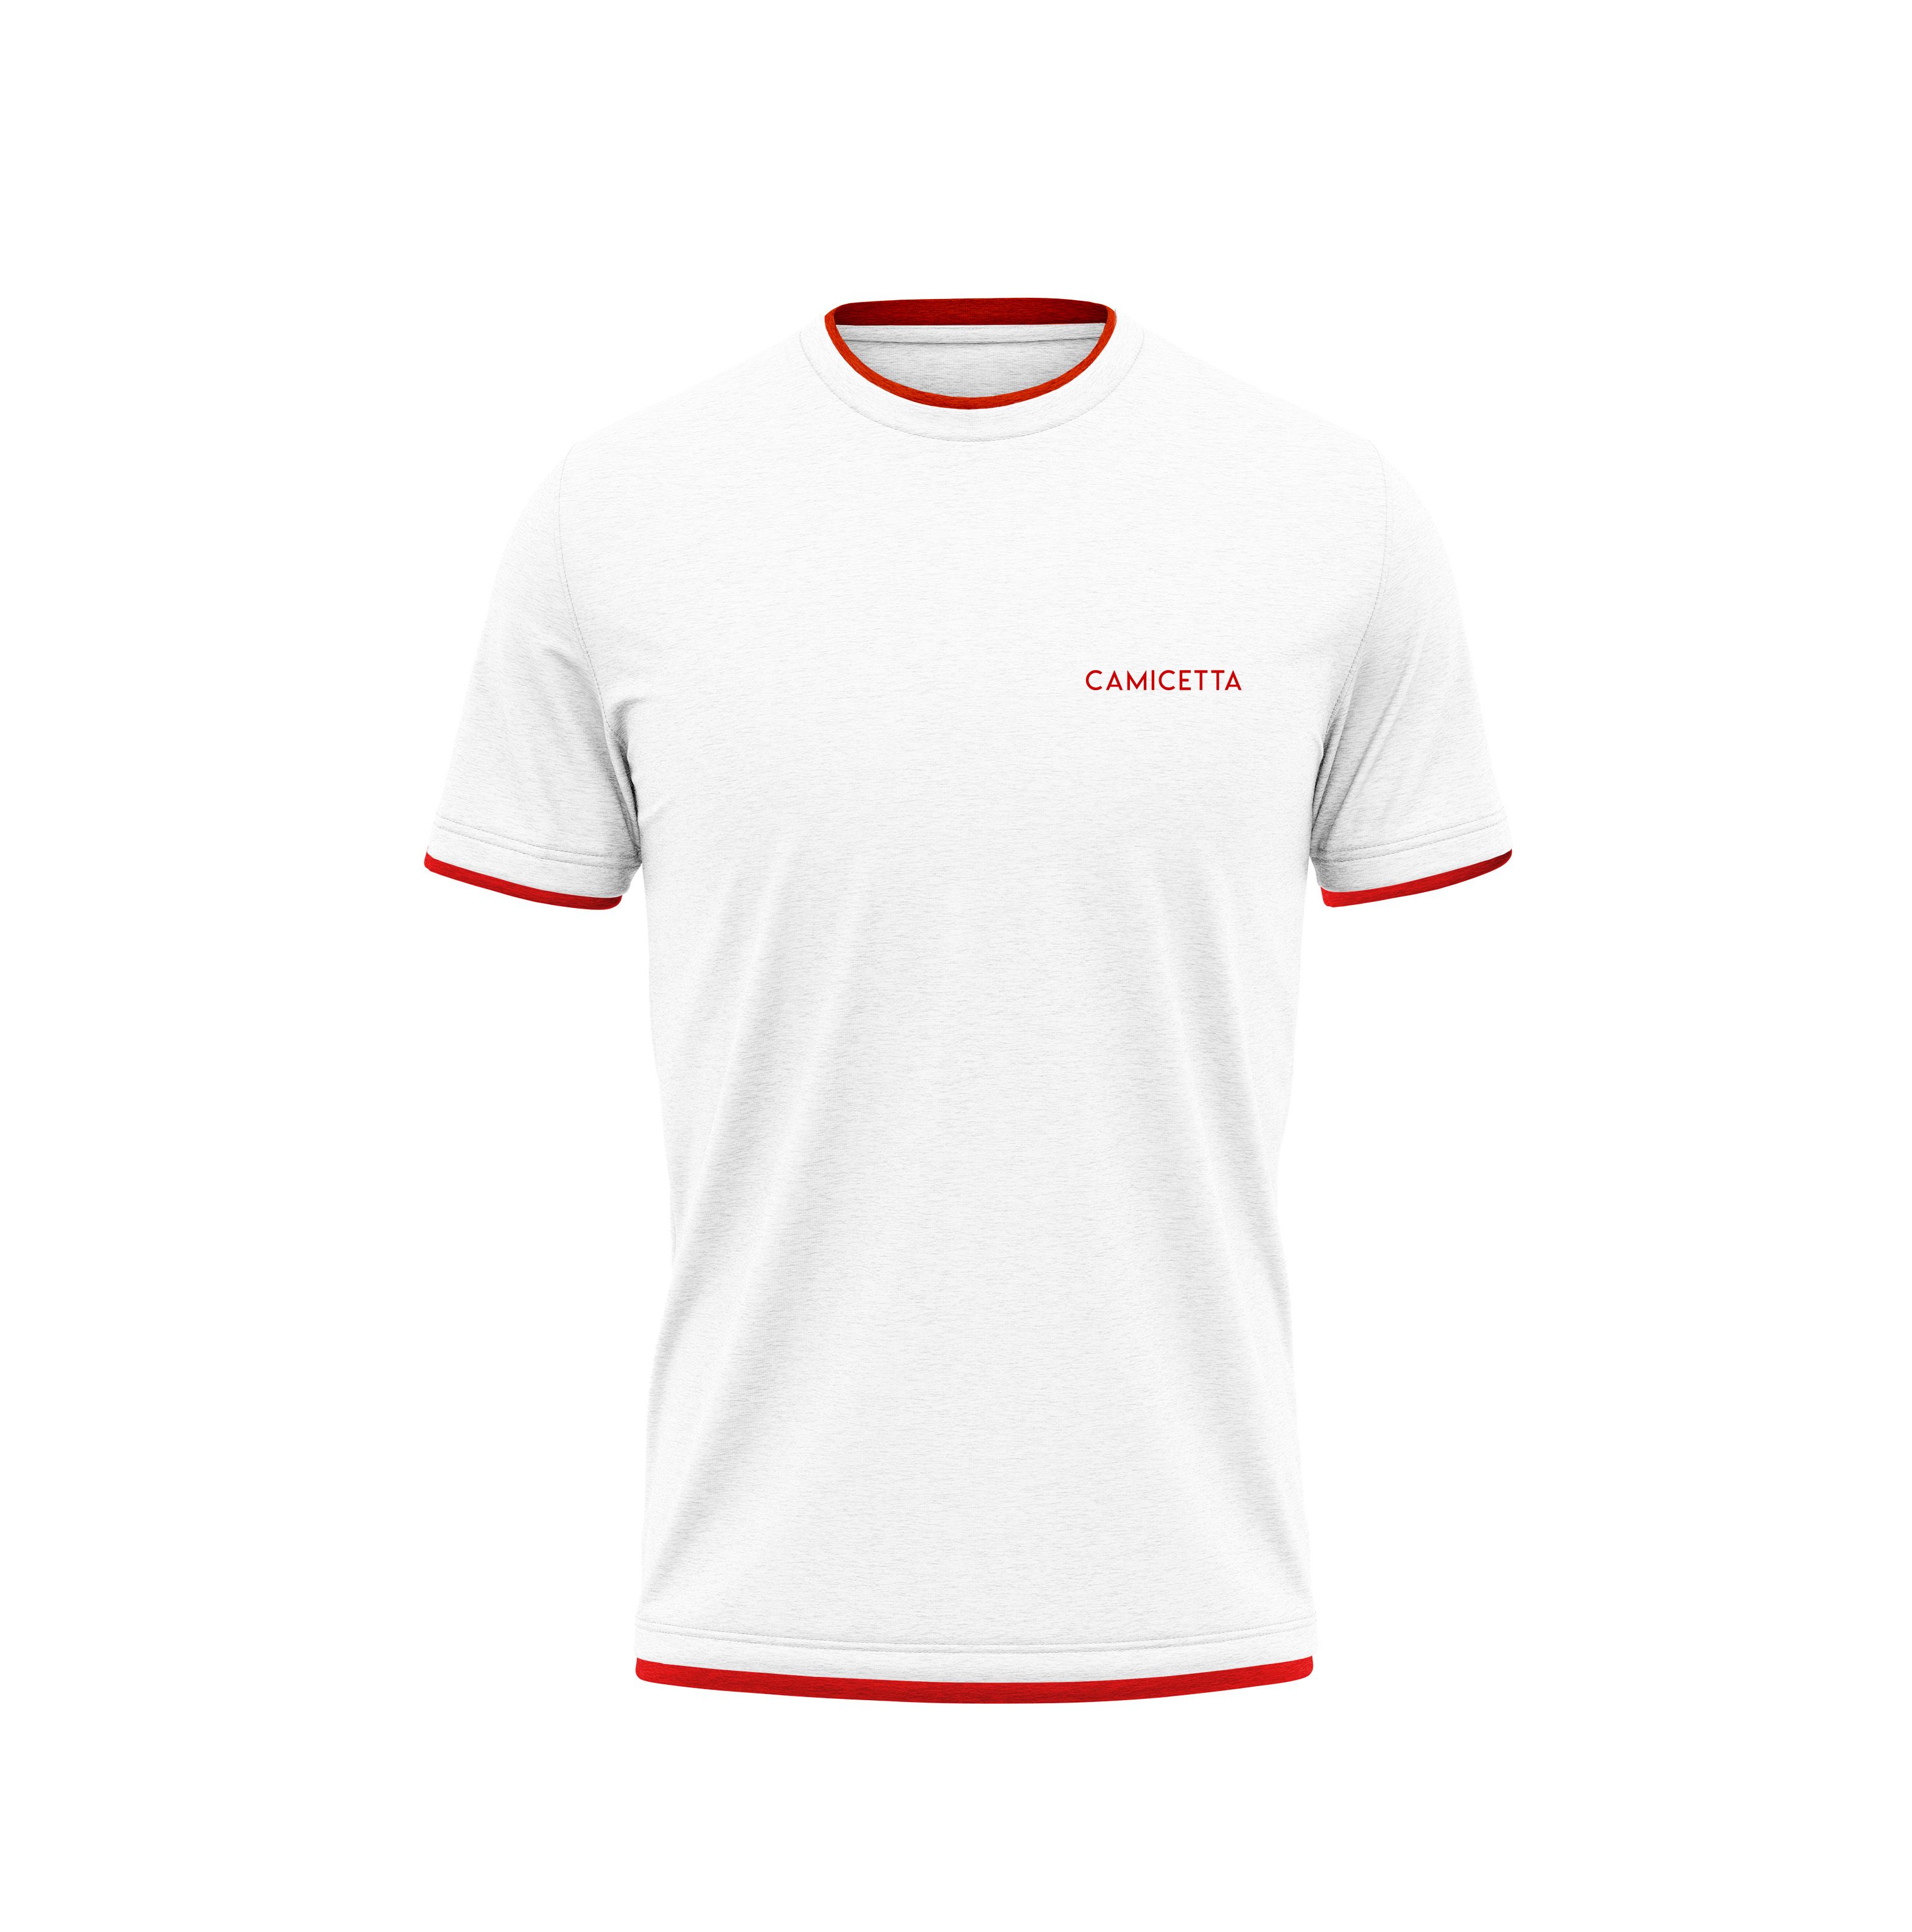 Biała koszulka t shirt z logo firmy